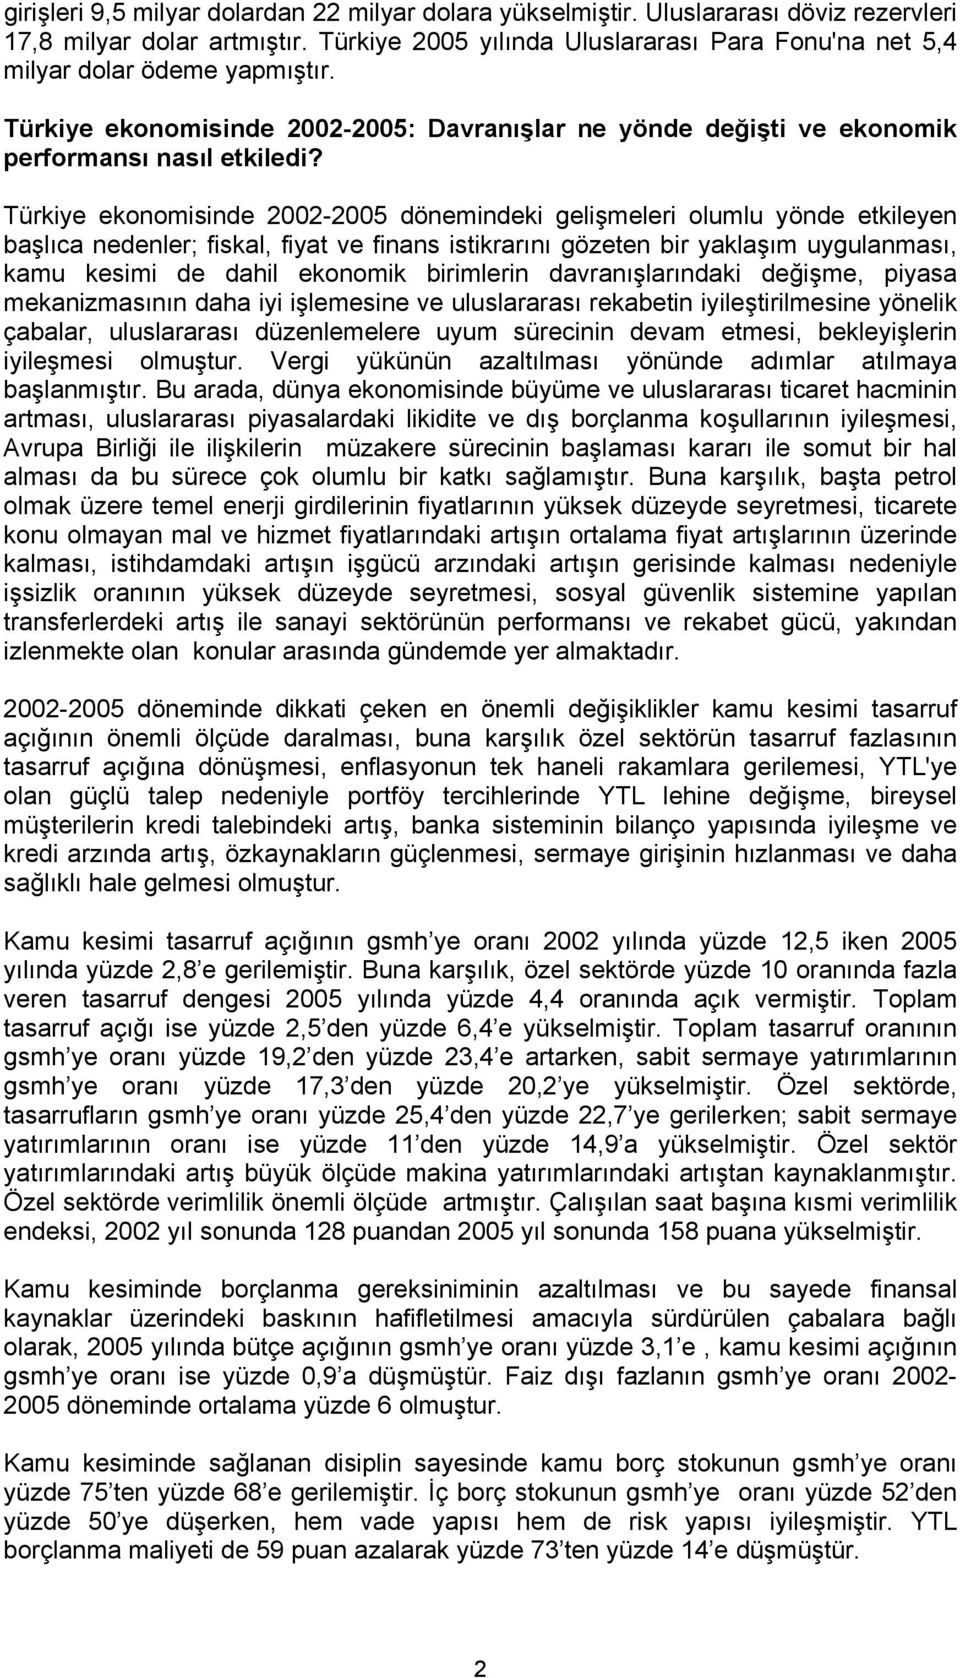 Türkiye ekonomisinde 2002-2005 dönemindeki gelişmeleri olumlu yönde etkileyen başlıca nedenler; fiskal, fiyat ve finans istikrarını gözeten bir yaklaşım uygulanması, kamu kesimi de dahil ekonomik